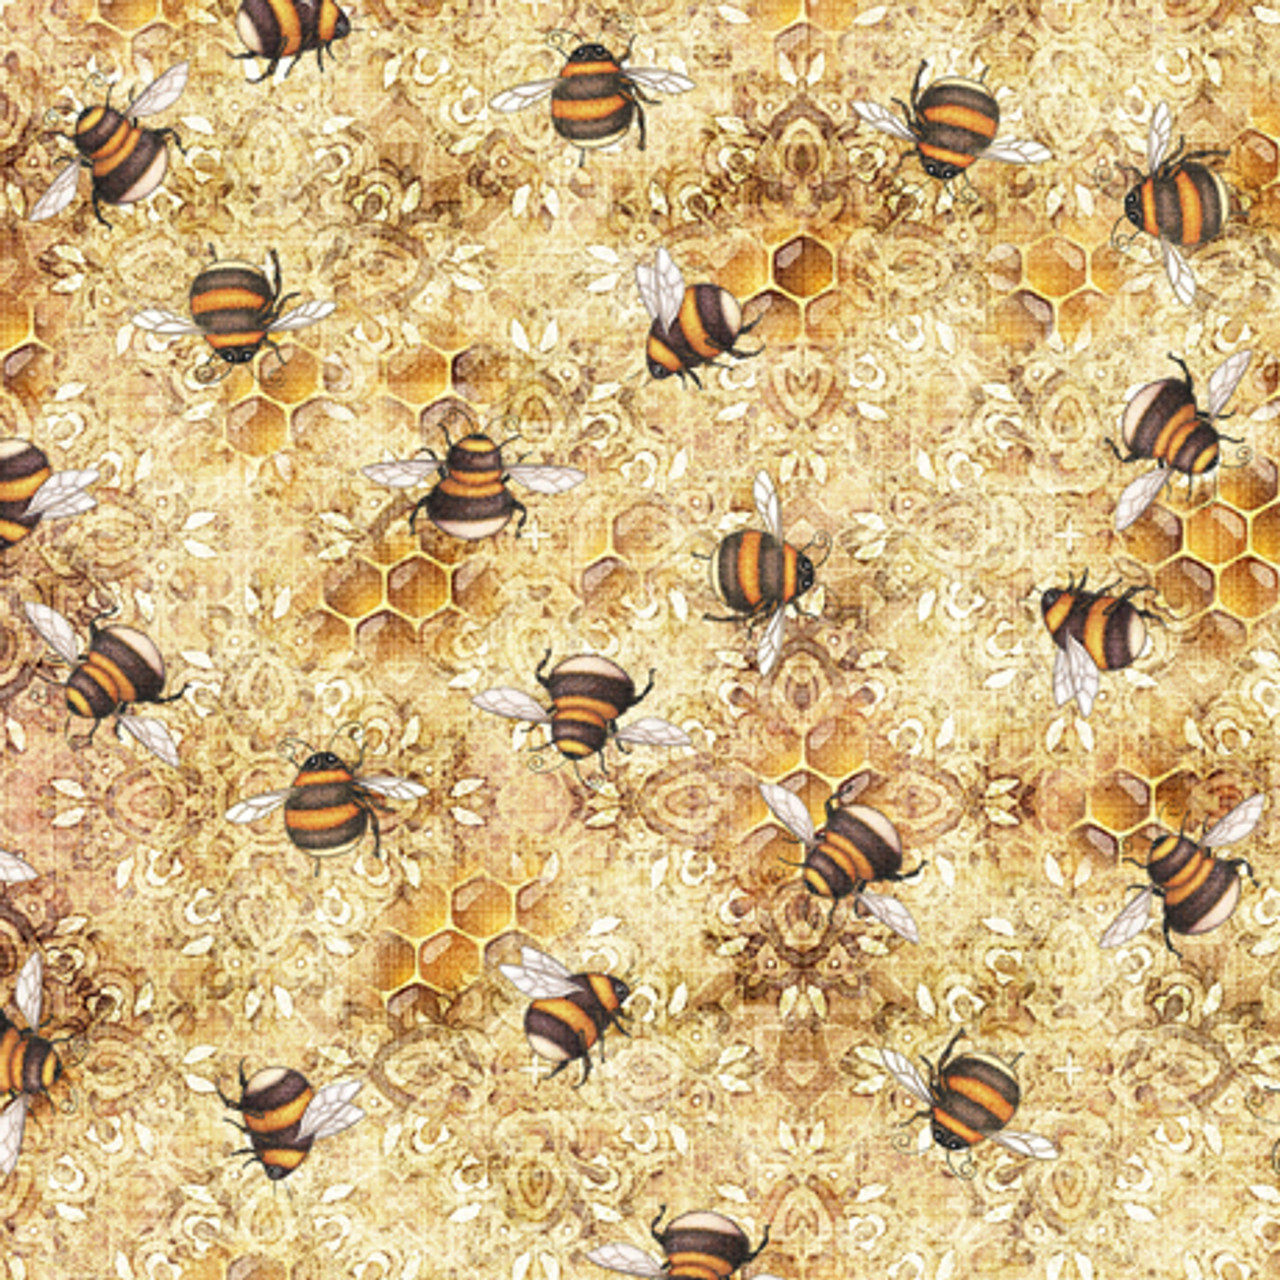 Honey Bee Farm CD2391-GREY from Timeless Treasures Fabrics